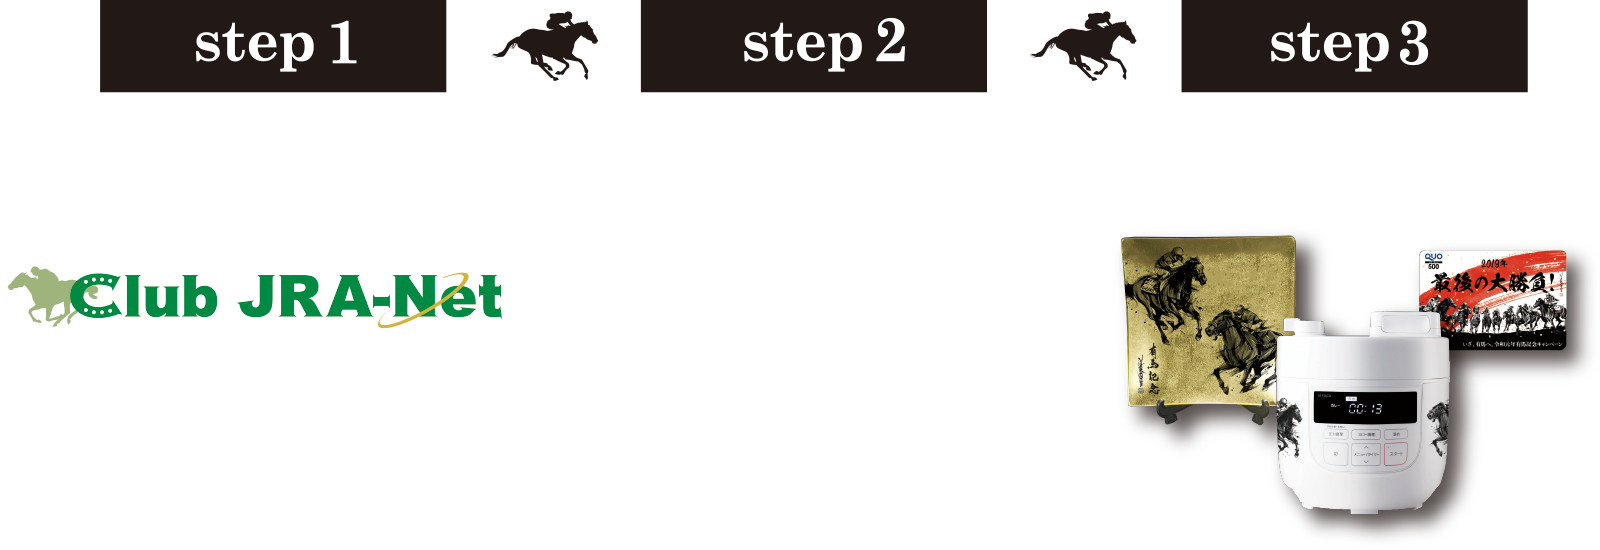 step1 srep 2step3